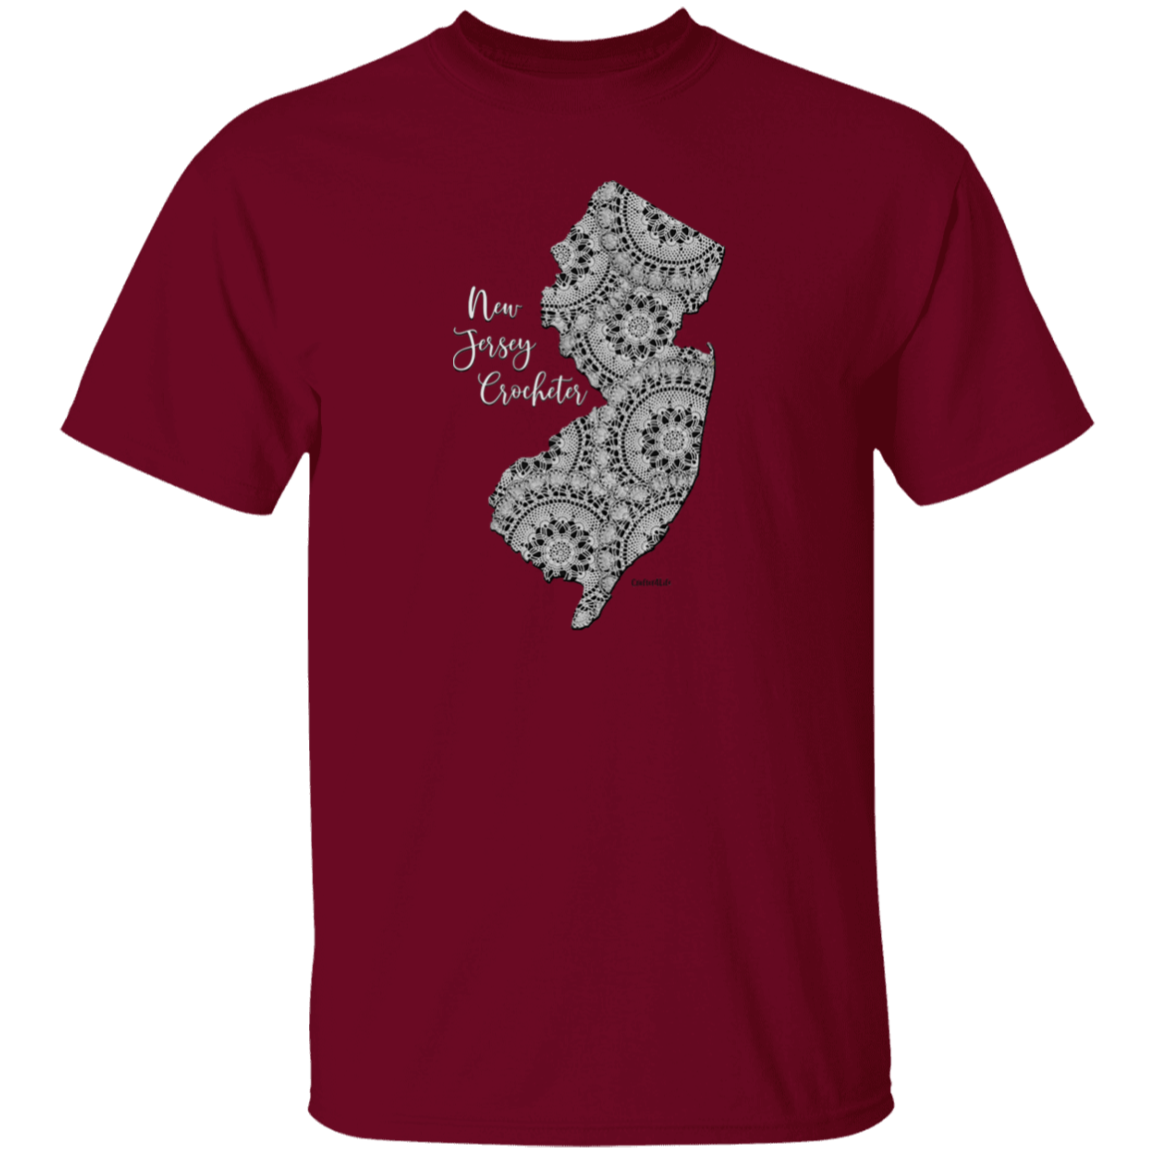 New Jersey Crocheter Cotton T-Shirt